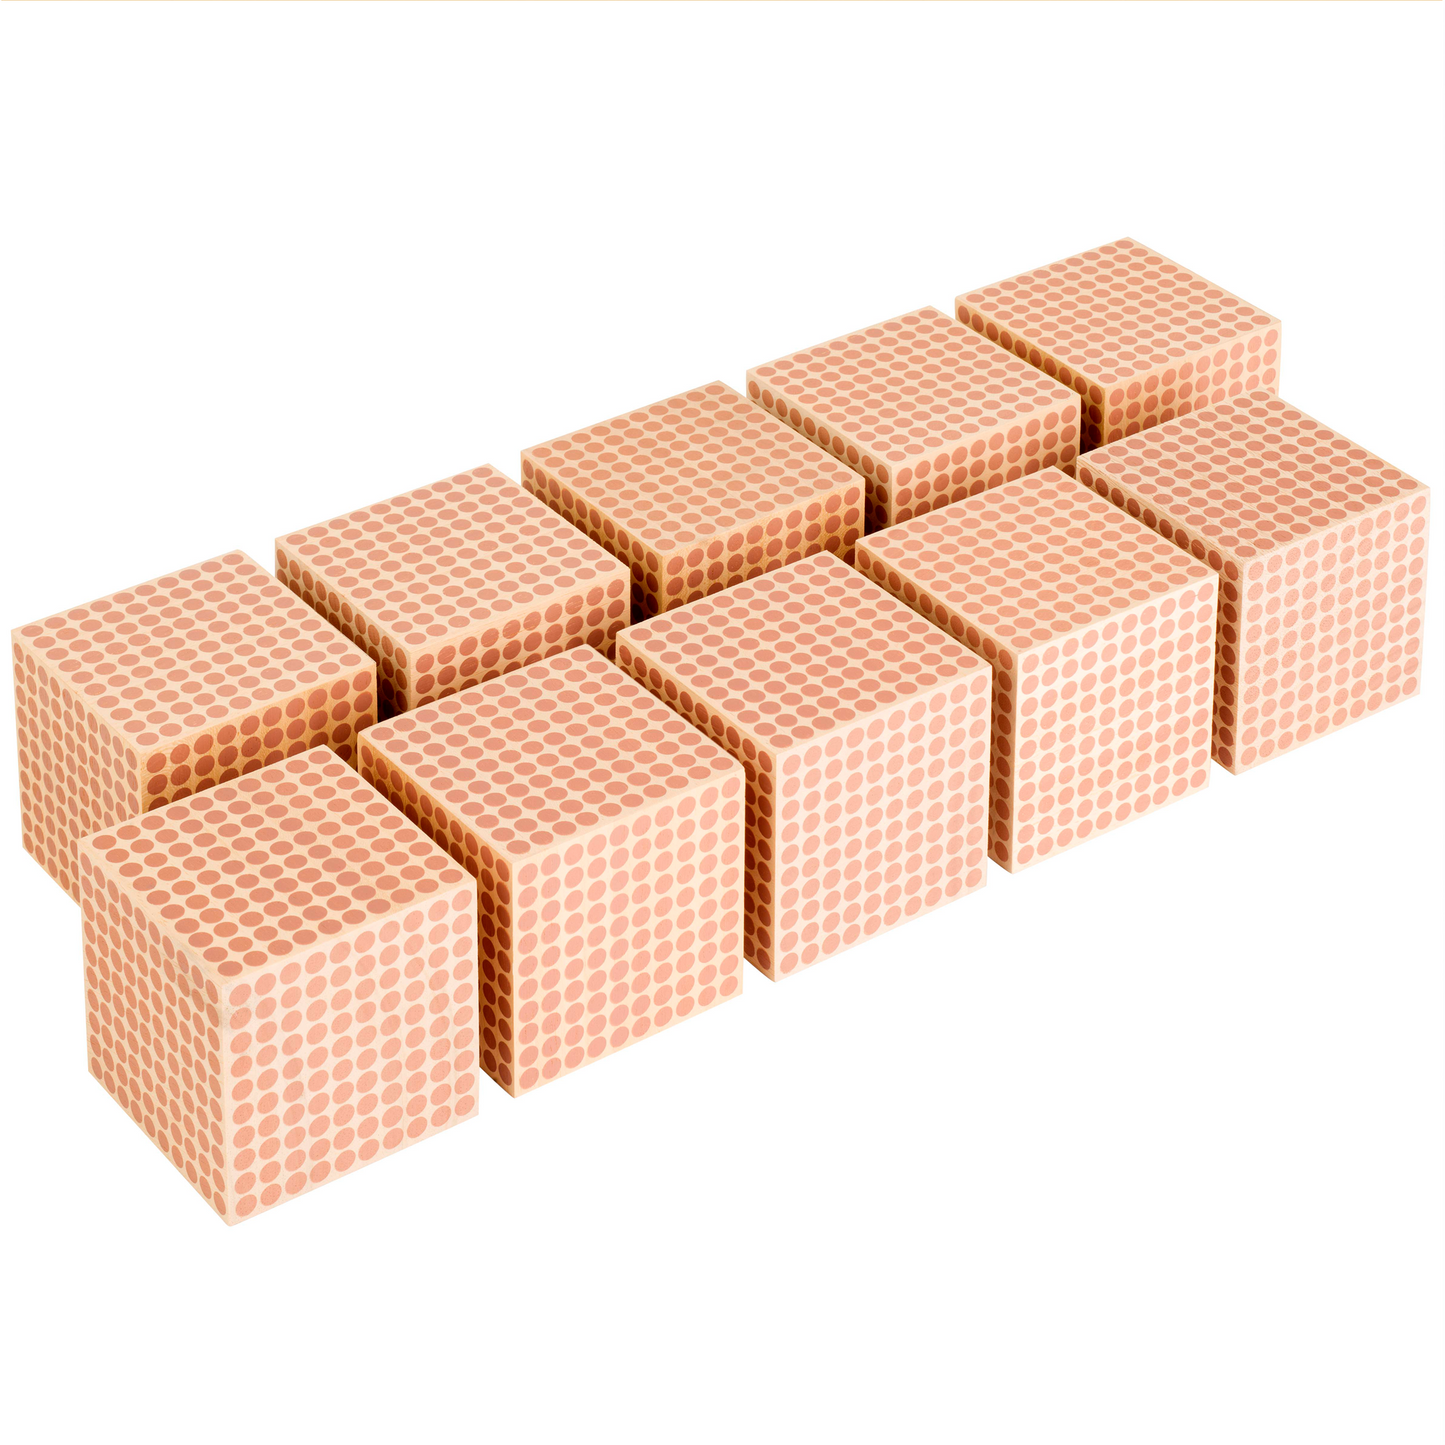 Wooden thousands cubes x10 - Nienhuis AMI